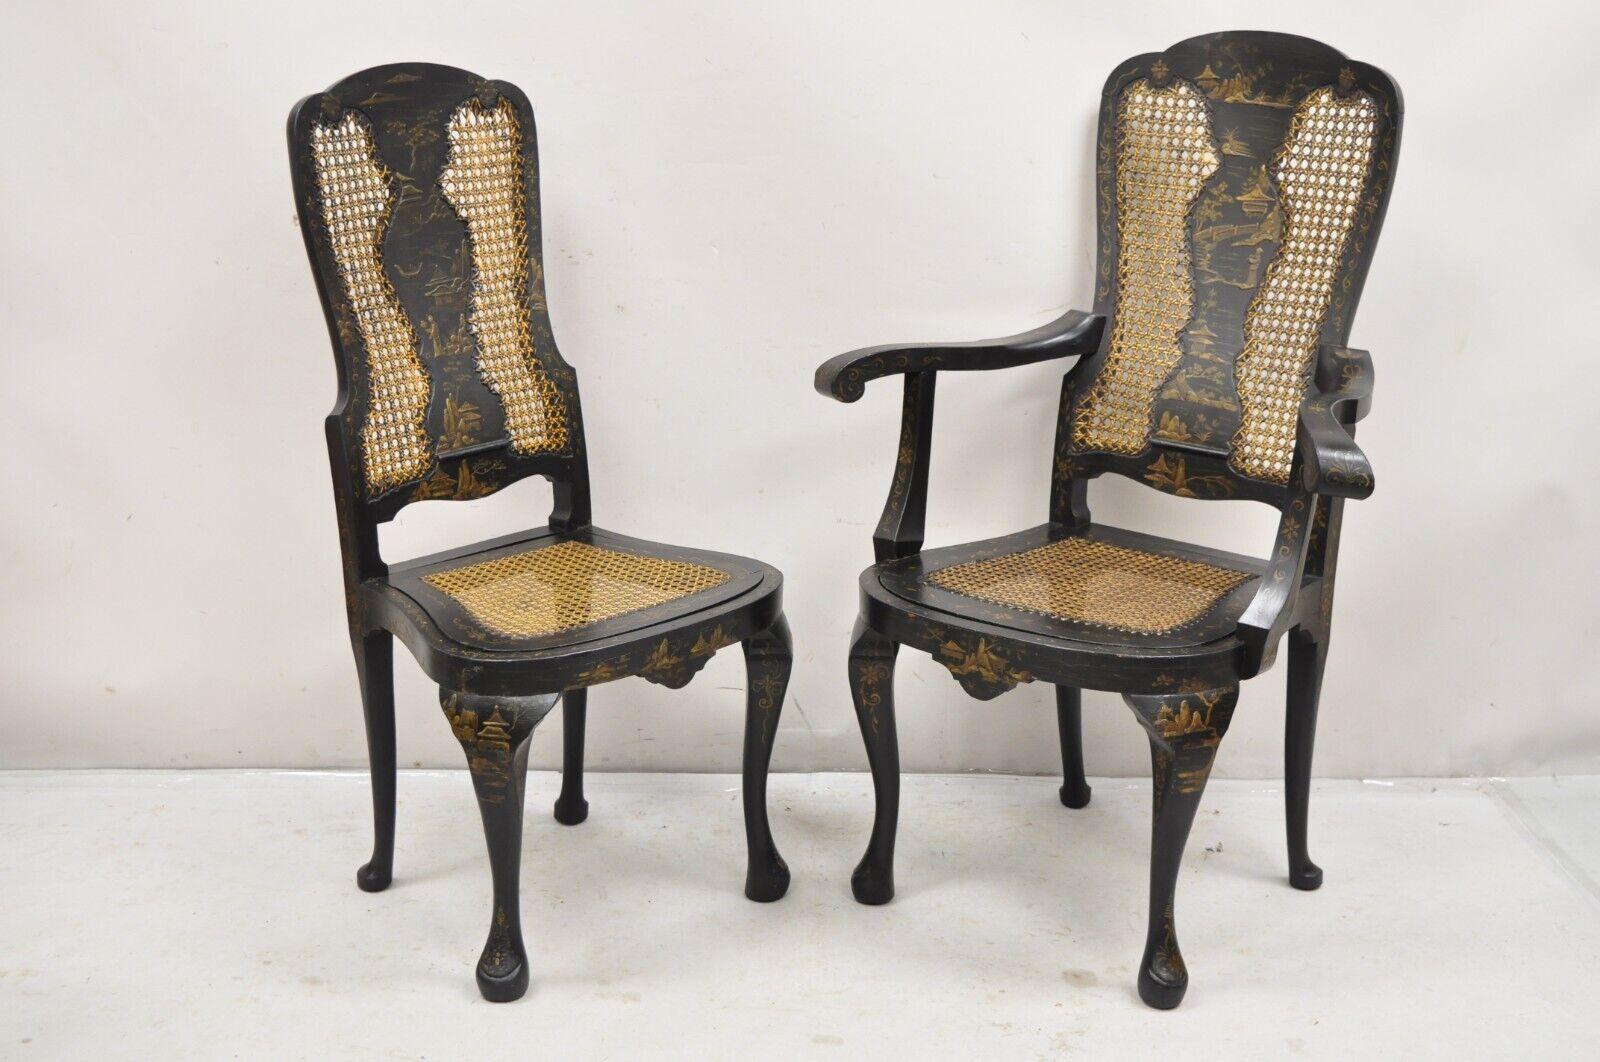 Antique Chinoiserie English Queen Anne Floral Cane Dining Chairs - Set of 4. L'ensemble comprend 2 chaises d'appoint et 2 fauteuils avec des sièges en canne tombante et des détails floraux peints remarquables. Circa 1900.
Mesures : 
(2) Fauteuils :